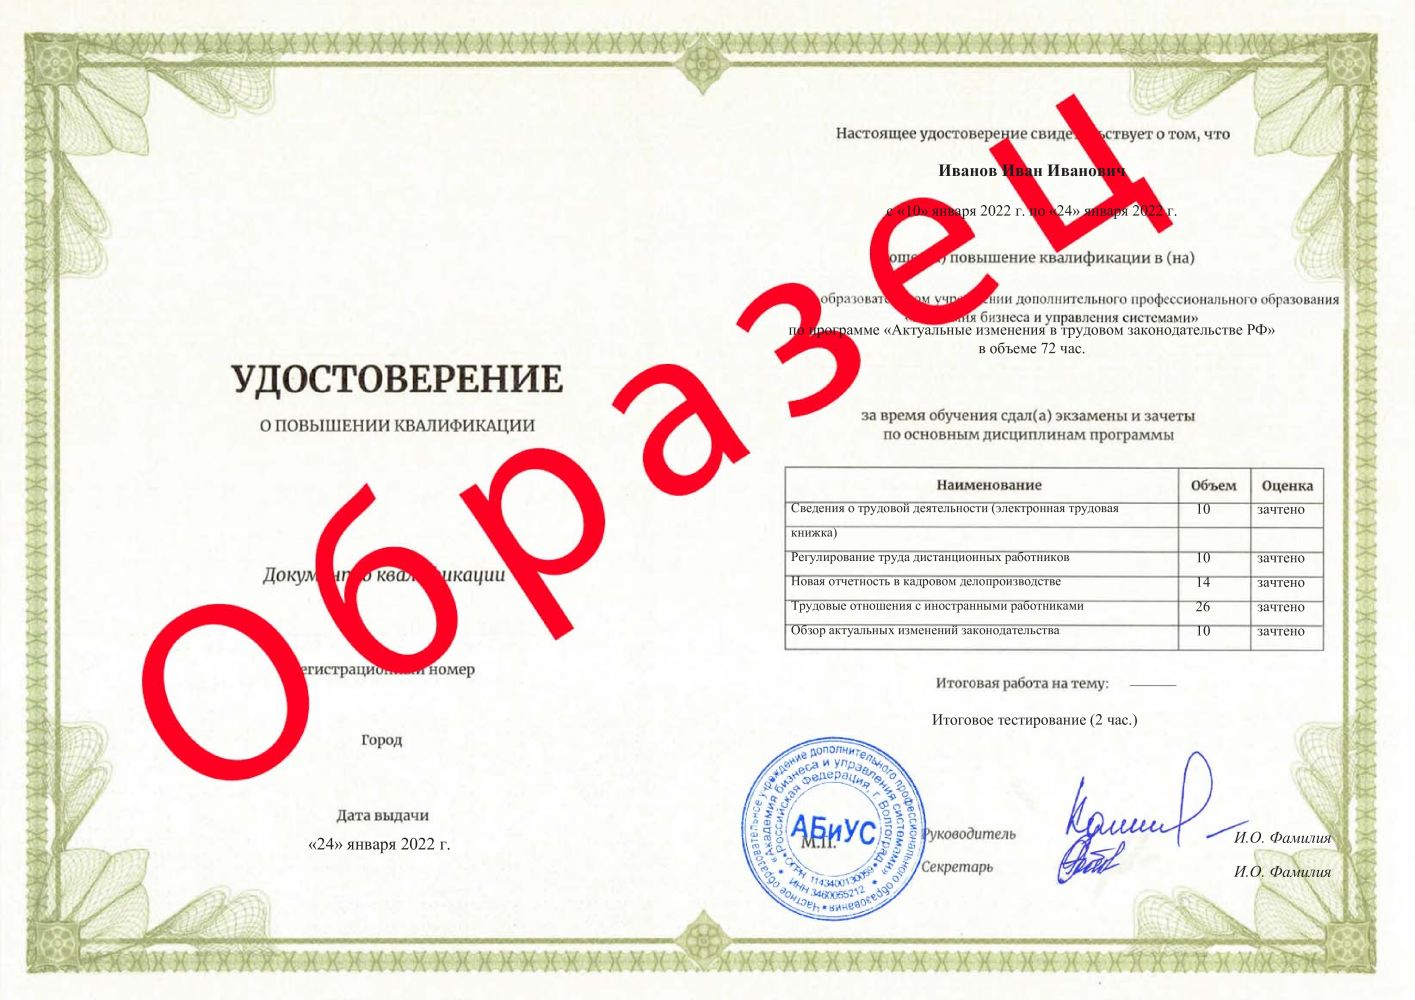 Удостоверение Актуальные изменения в трудовом законодательстве РФ 72 часа 5688 руб.